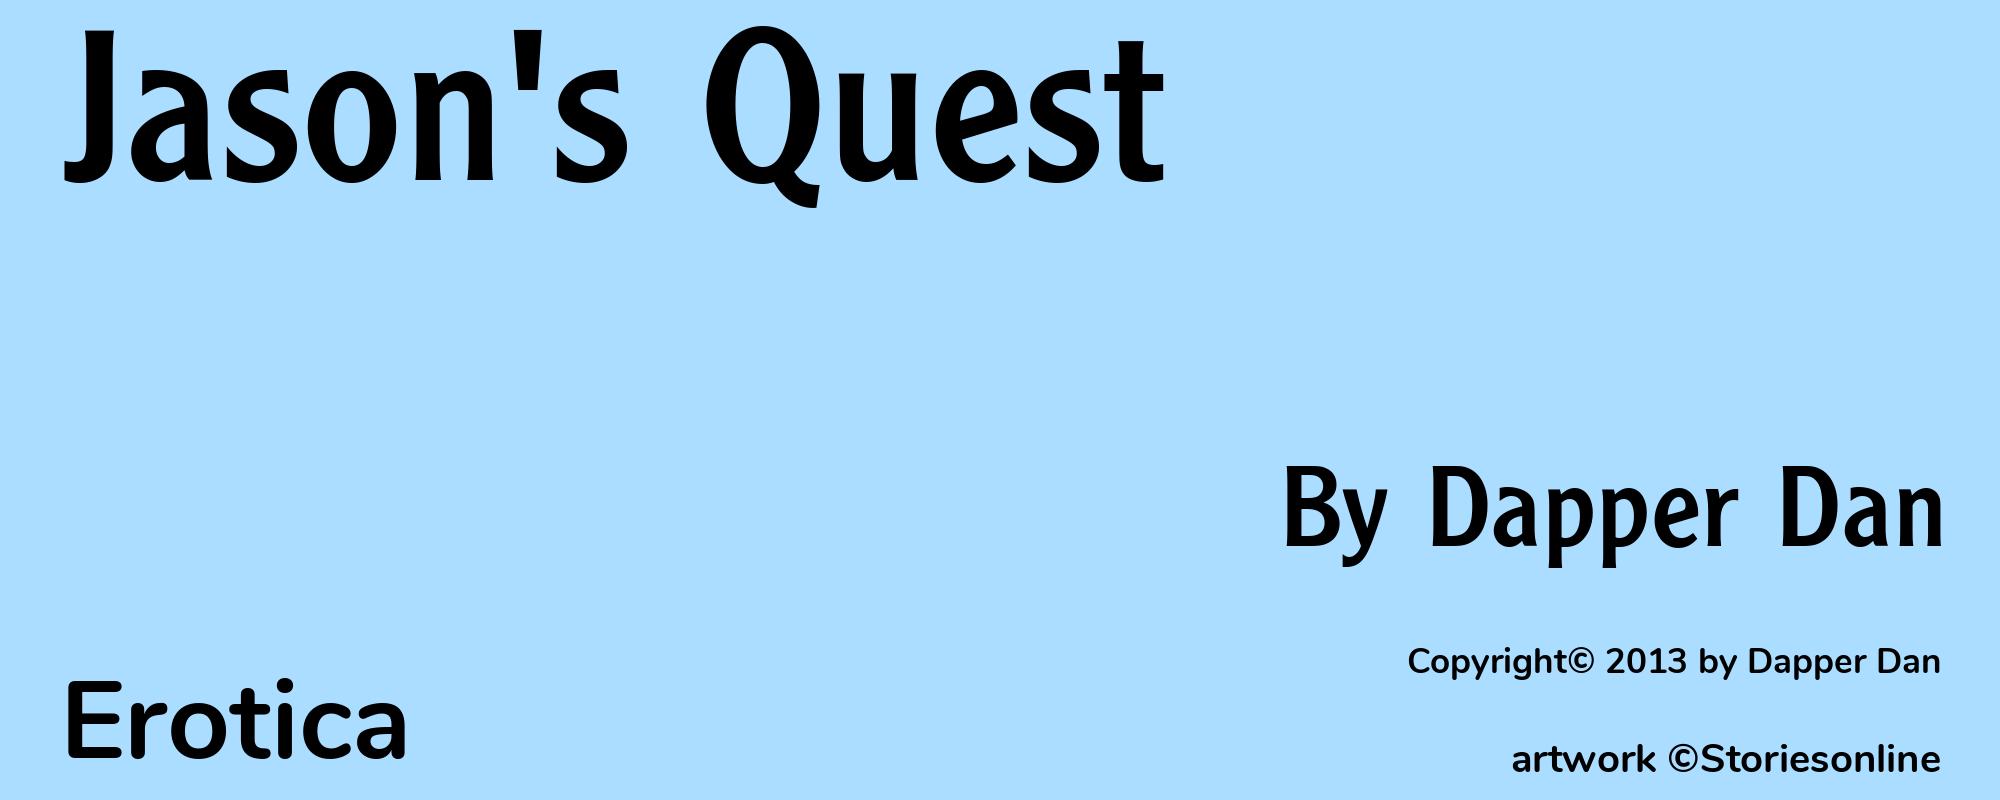 Jason's Quest - Cover